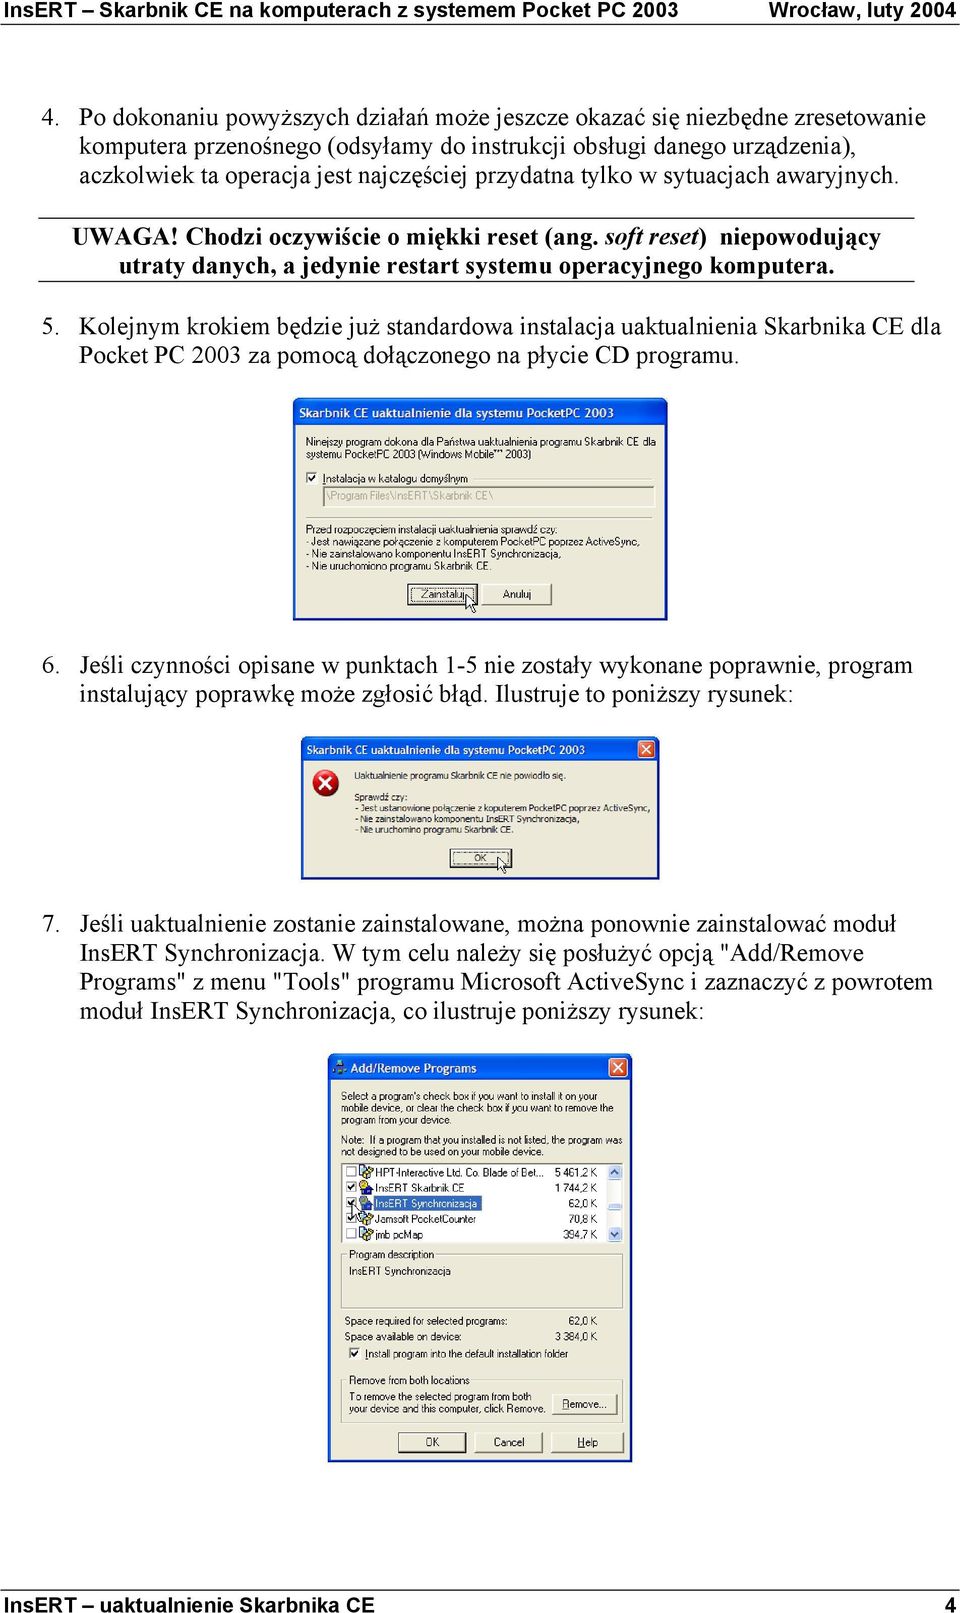 Kolejnym krokiem będzie juŝ standardowa instalacja uaktualnienia Skarbnika CE dla Pocket PC 2003 za pomocą dołączonego na płycie CD programu. 6.